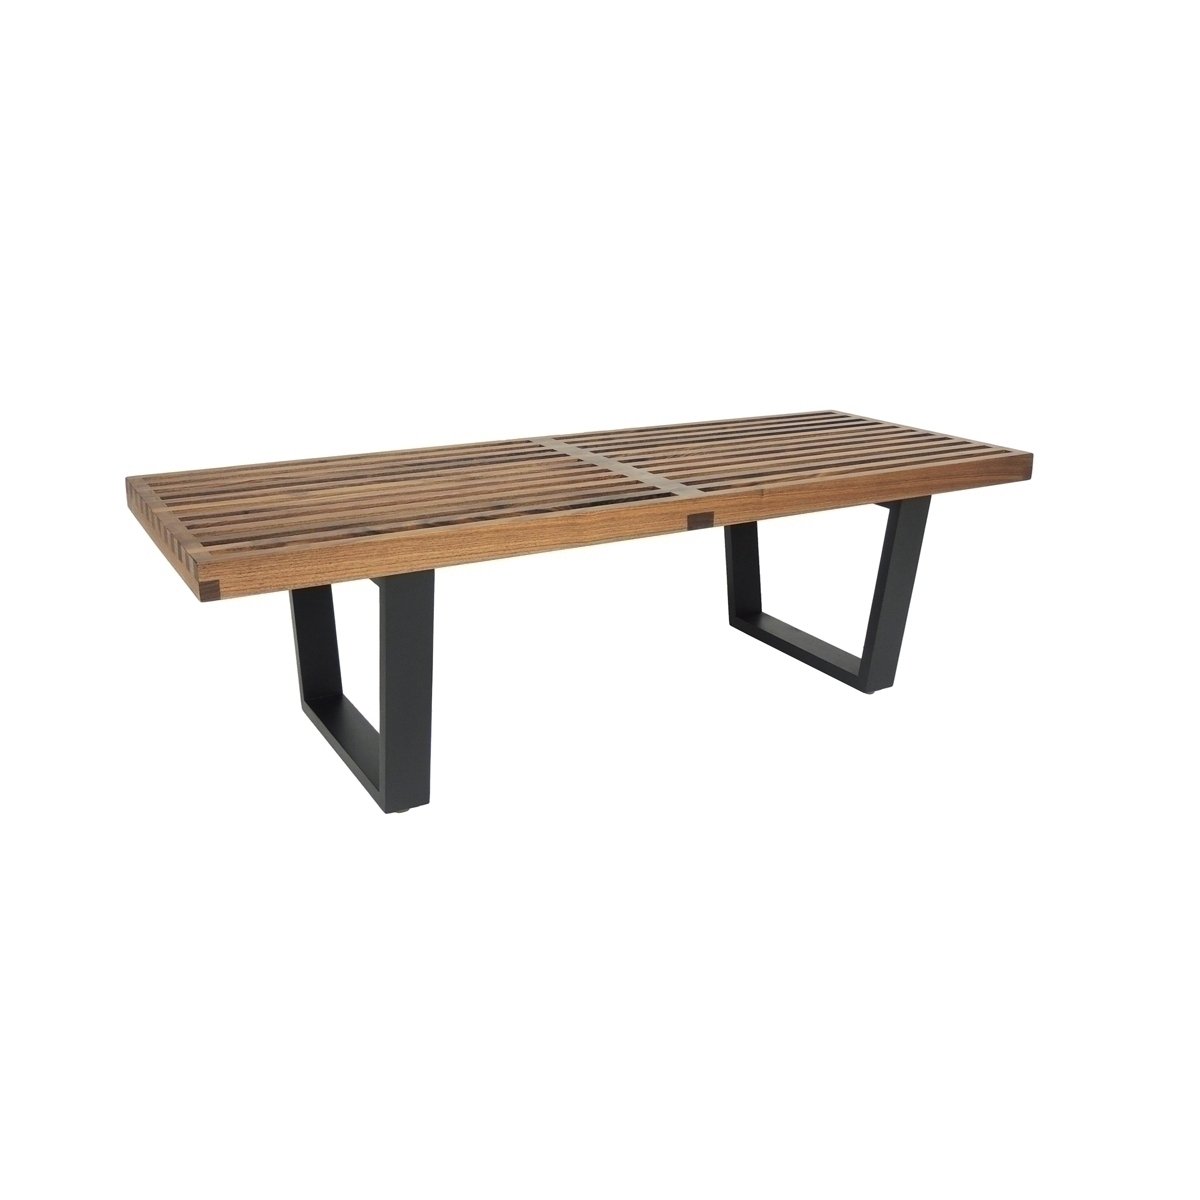 nelson-type 4ft slat bench